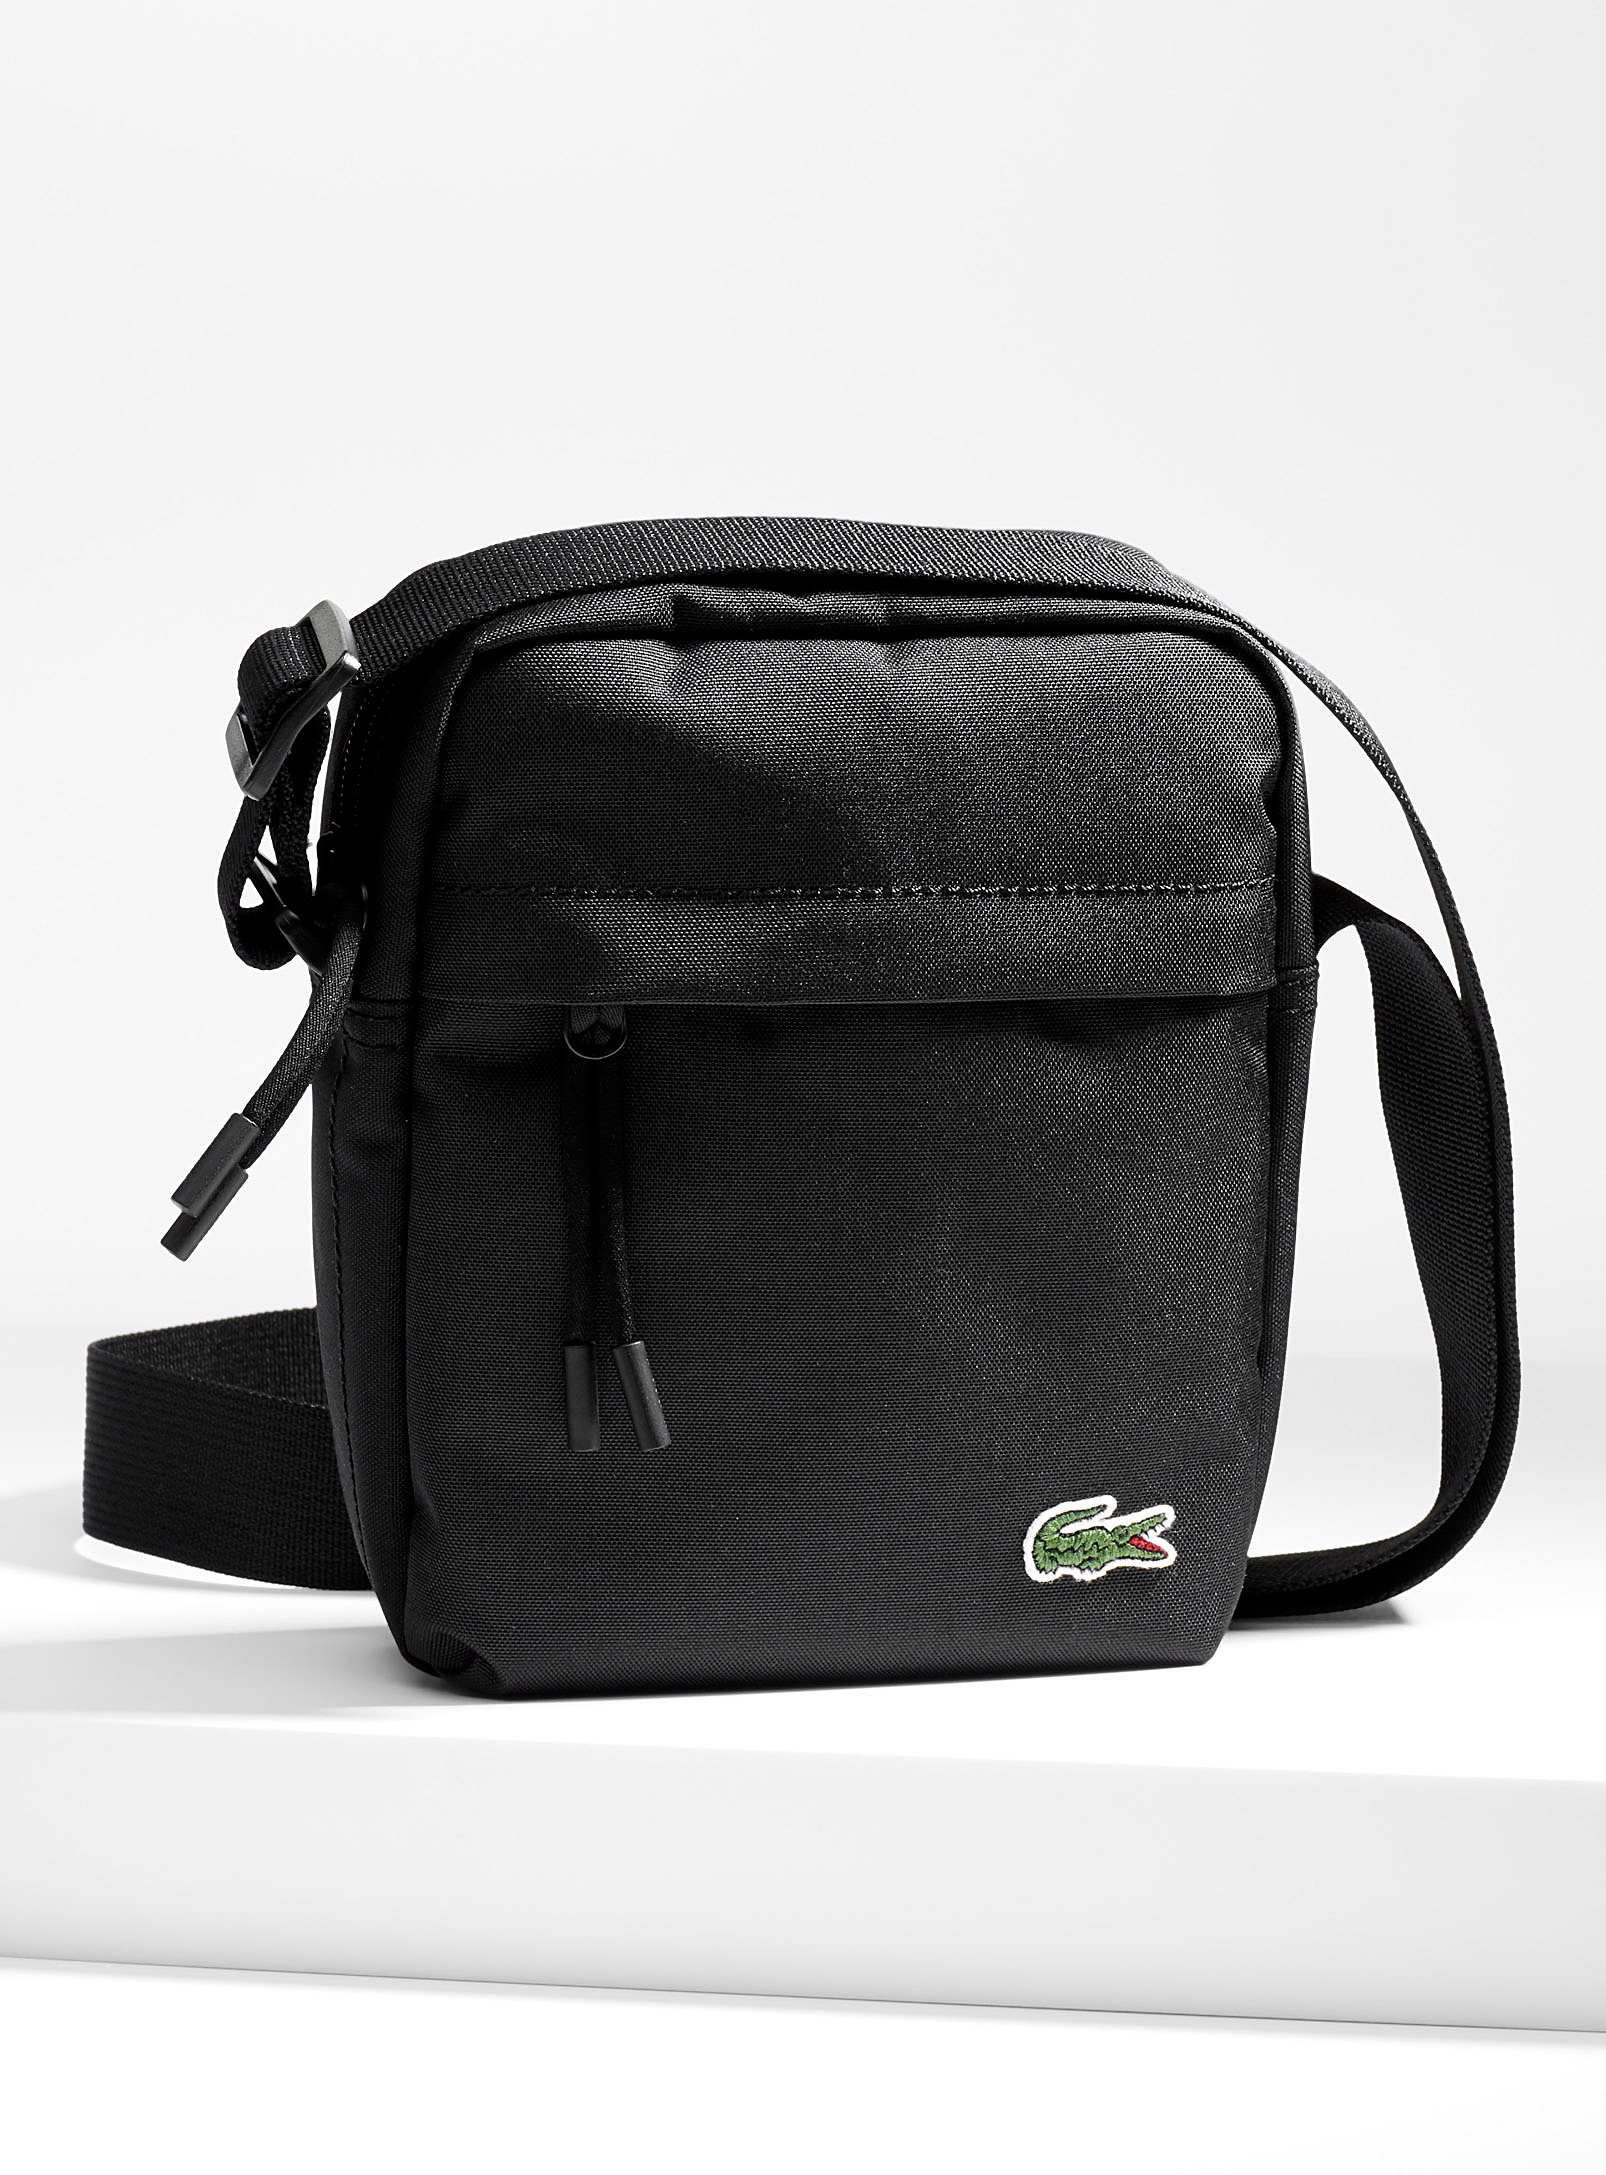 Lacoste Neocroc Shoulder Bag In Black